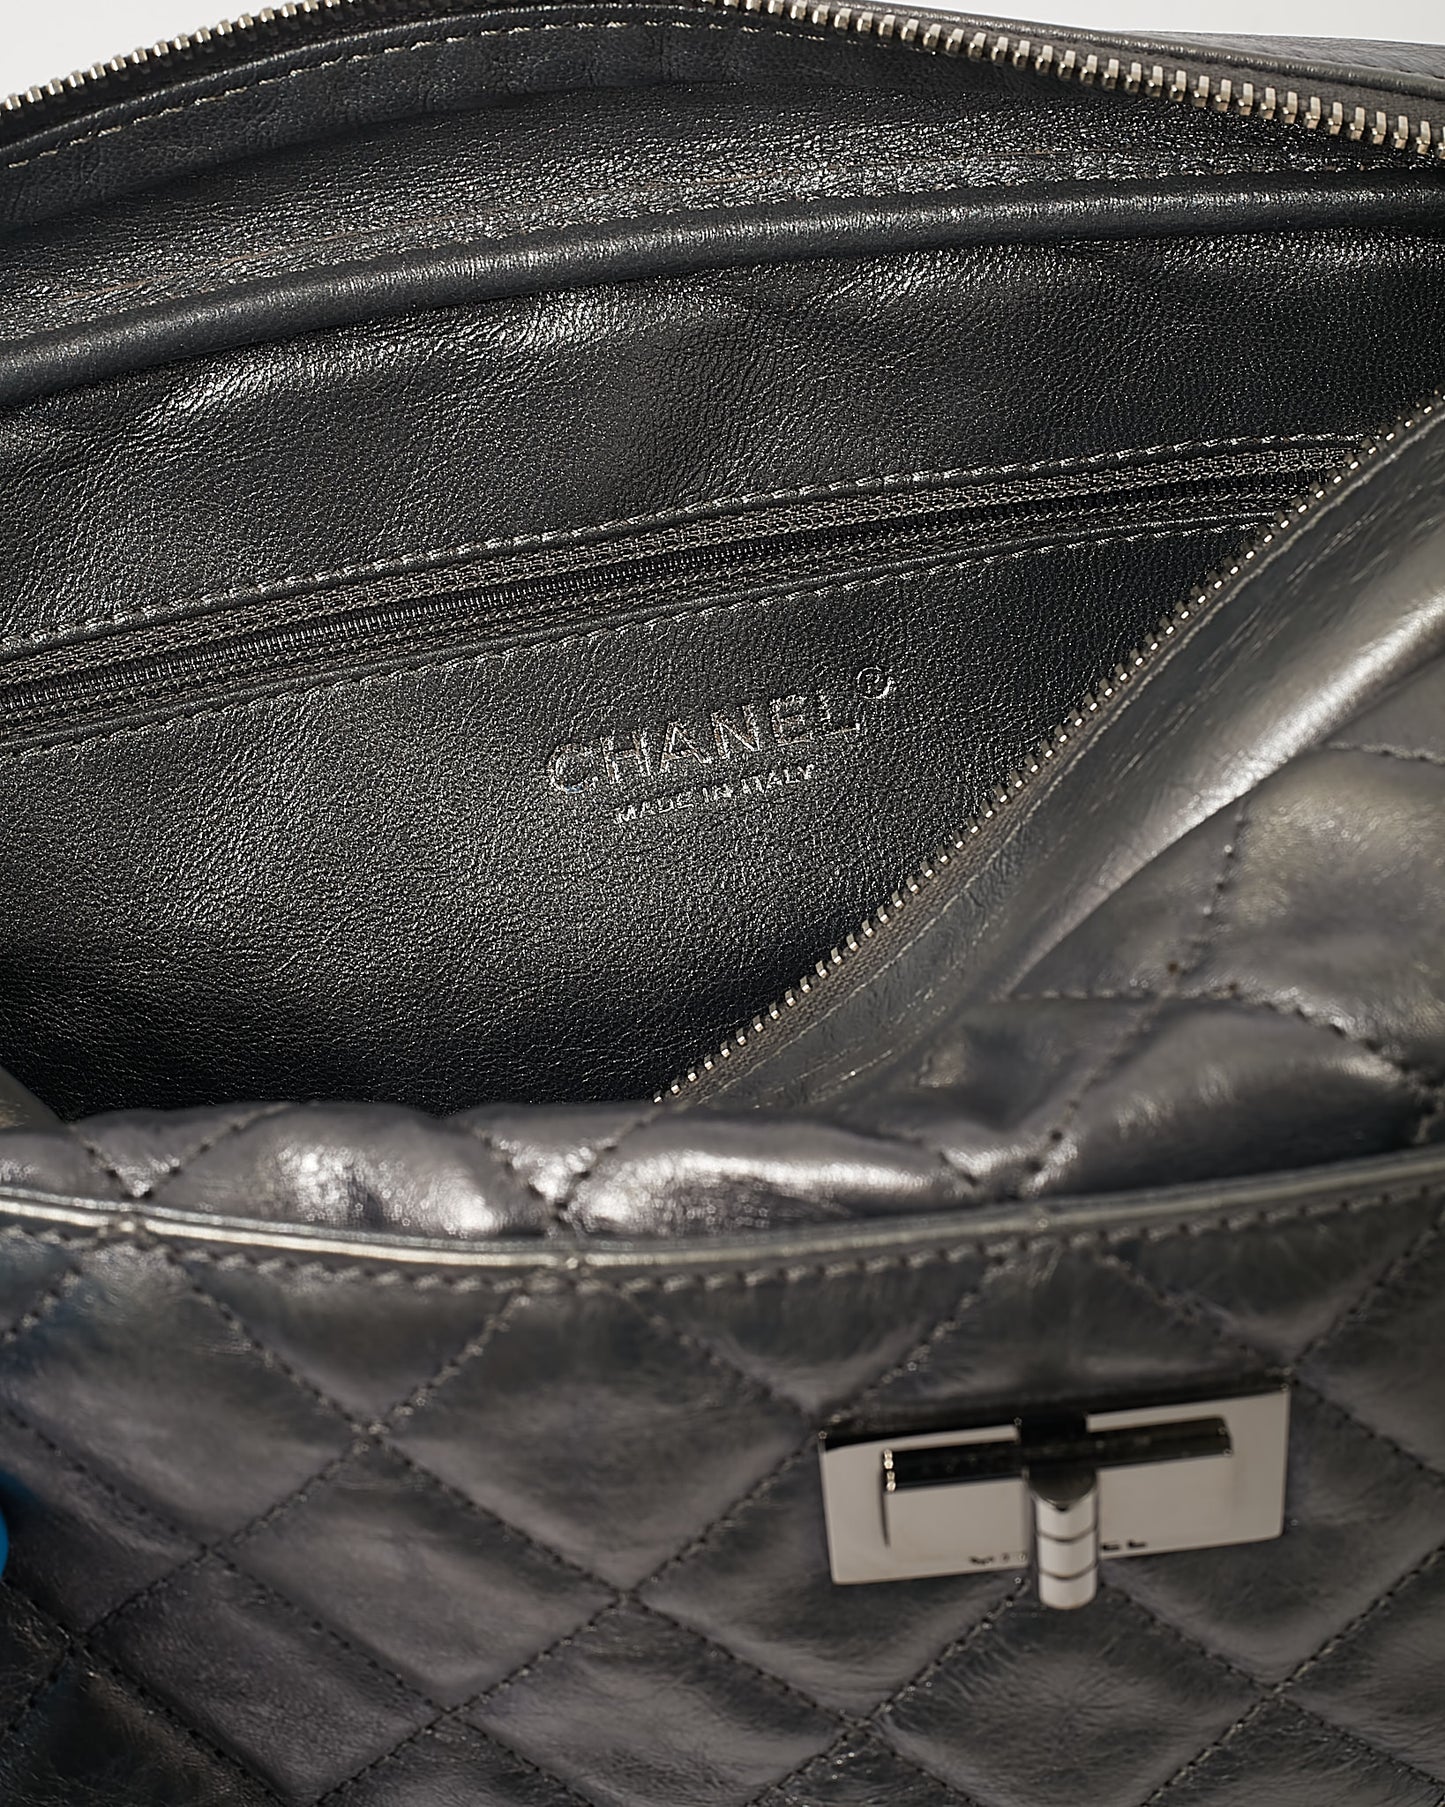 Grand sac photo réédition en cuir argenté foncé Chanel